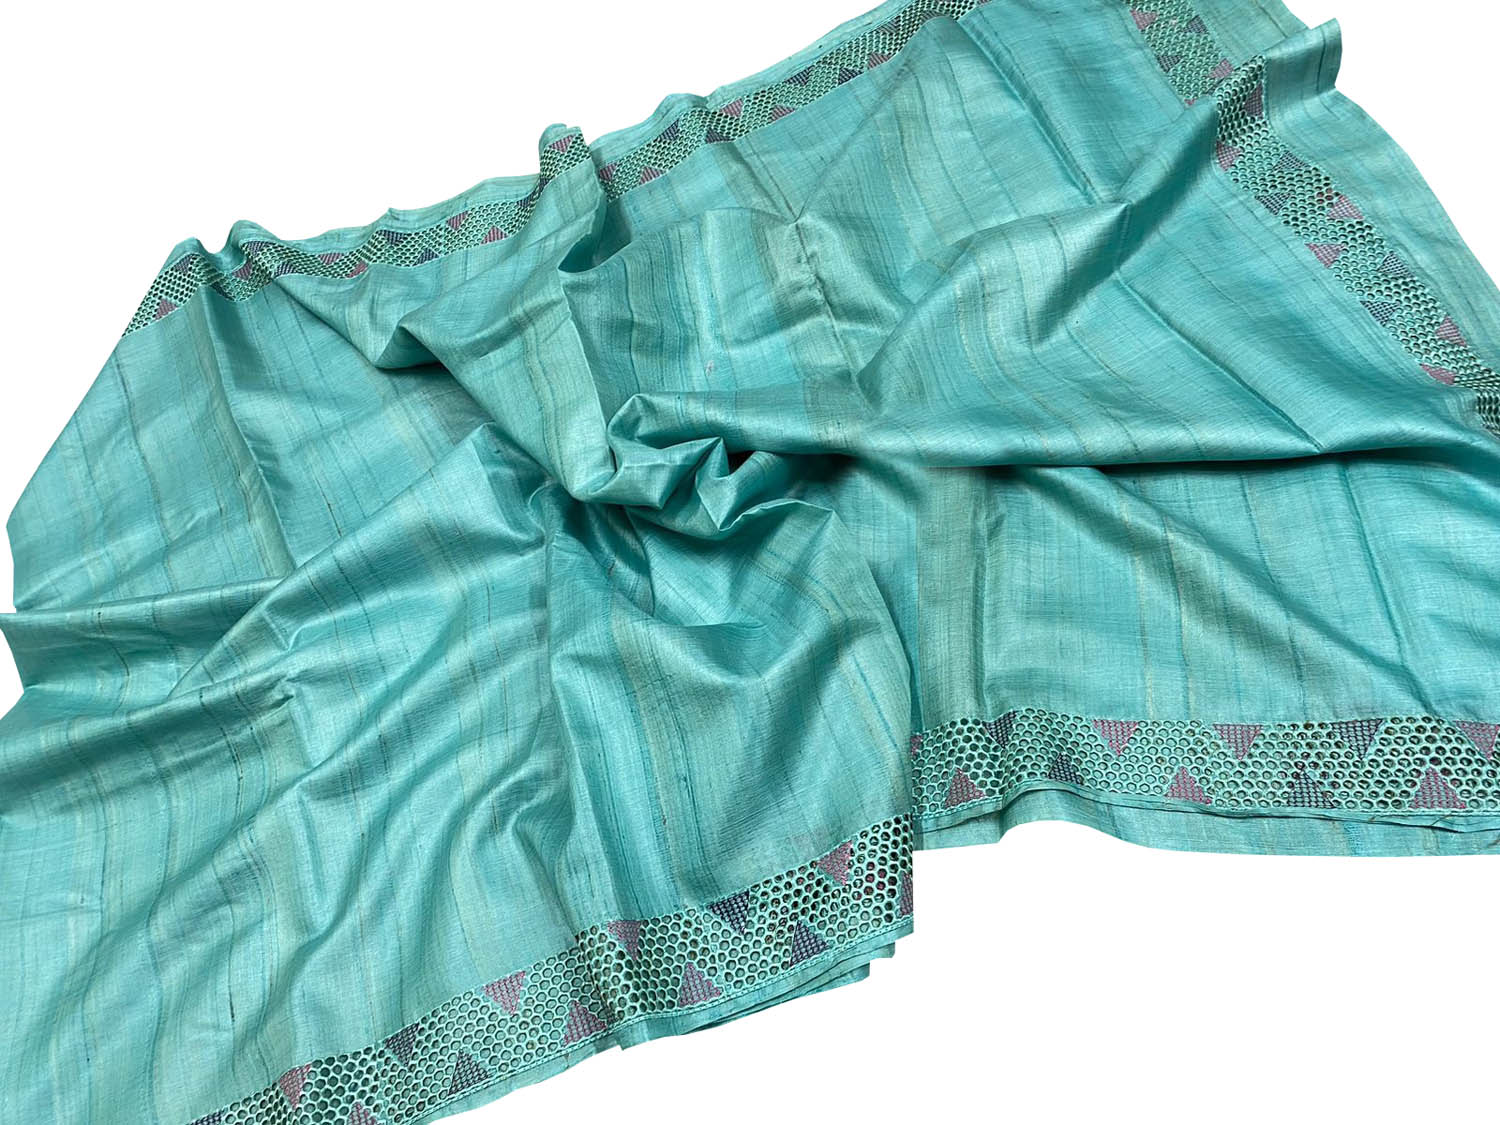 Handloom Tussar Cut Work Saree - Blue Bhagalpur Desi | Professional Ethnic Wear - Luxurion World